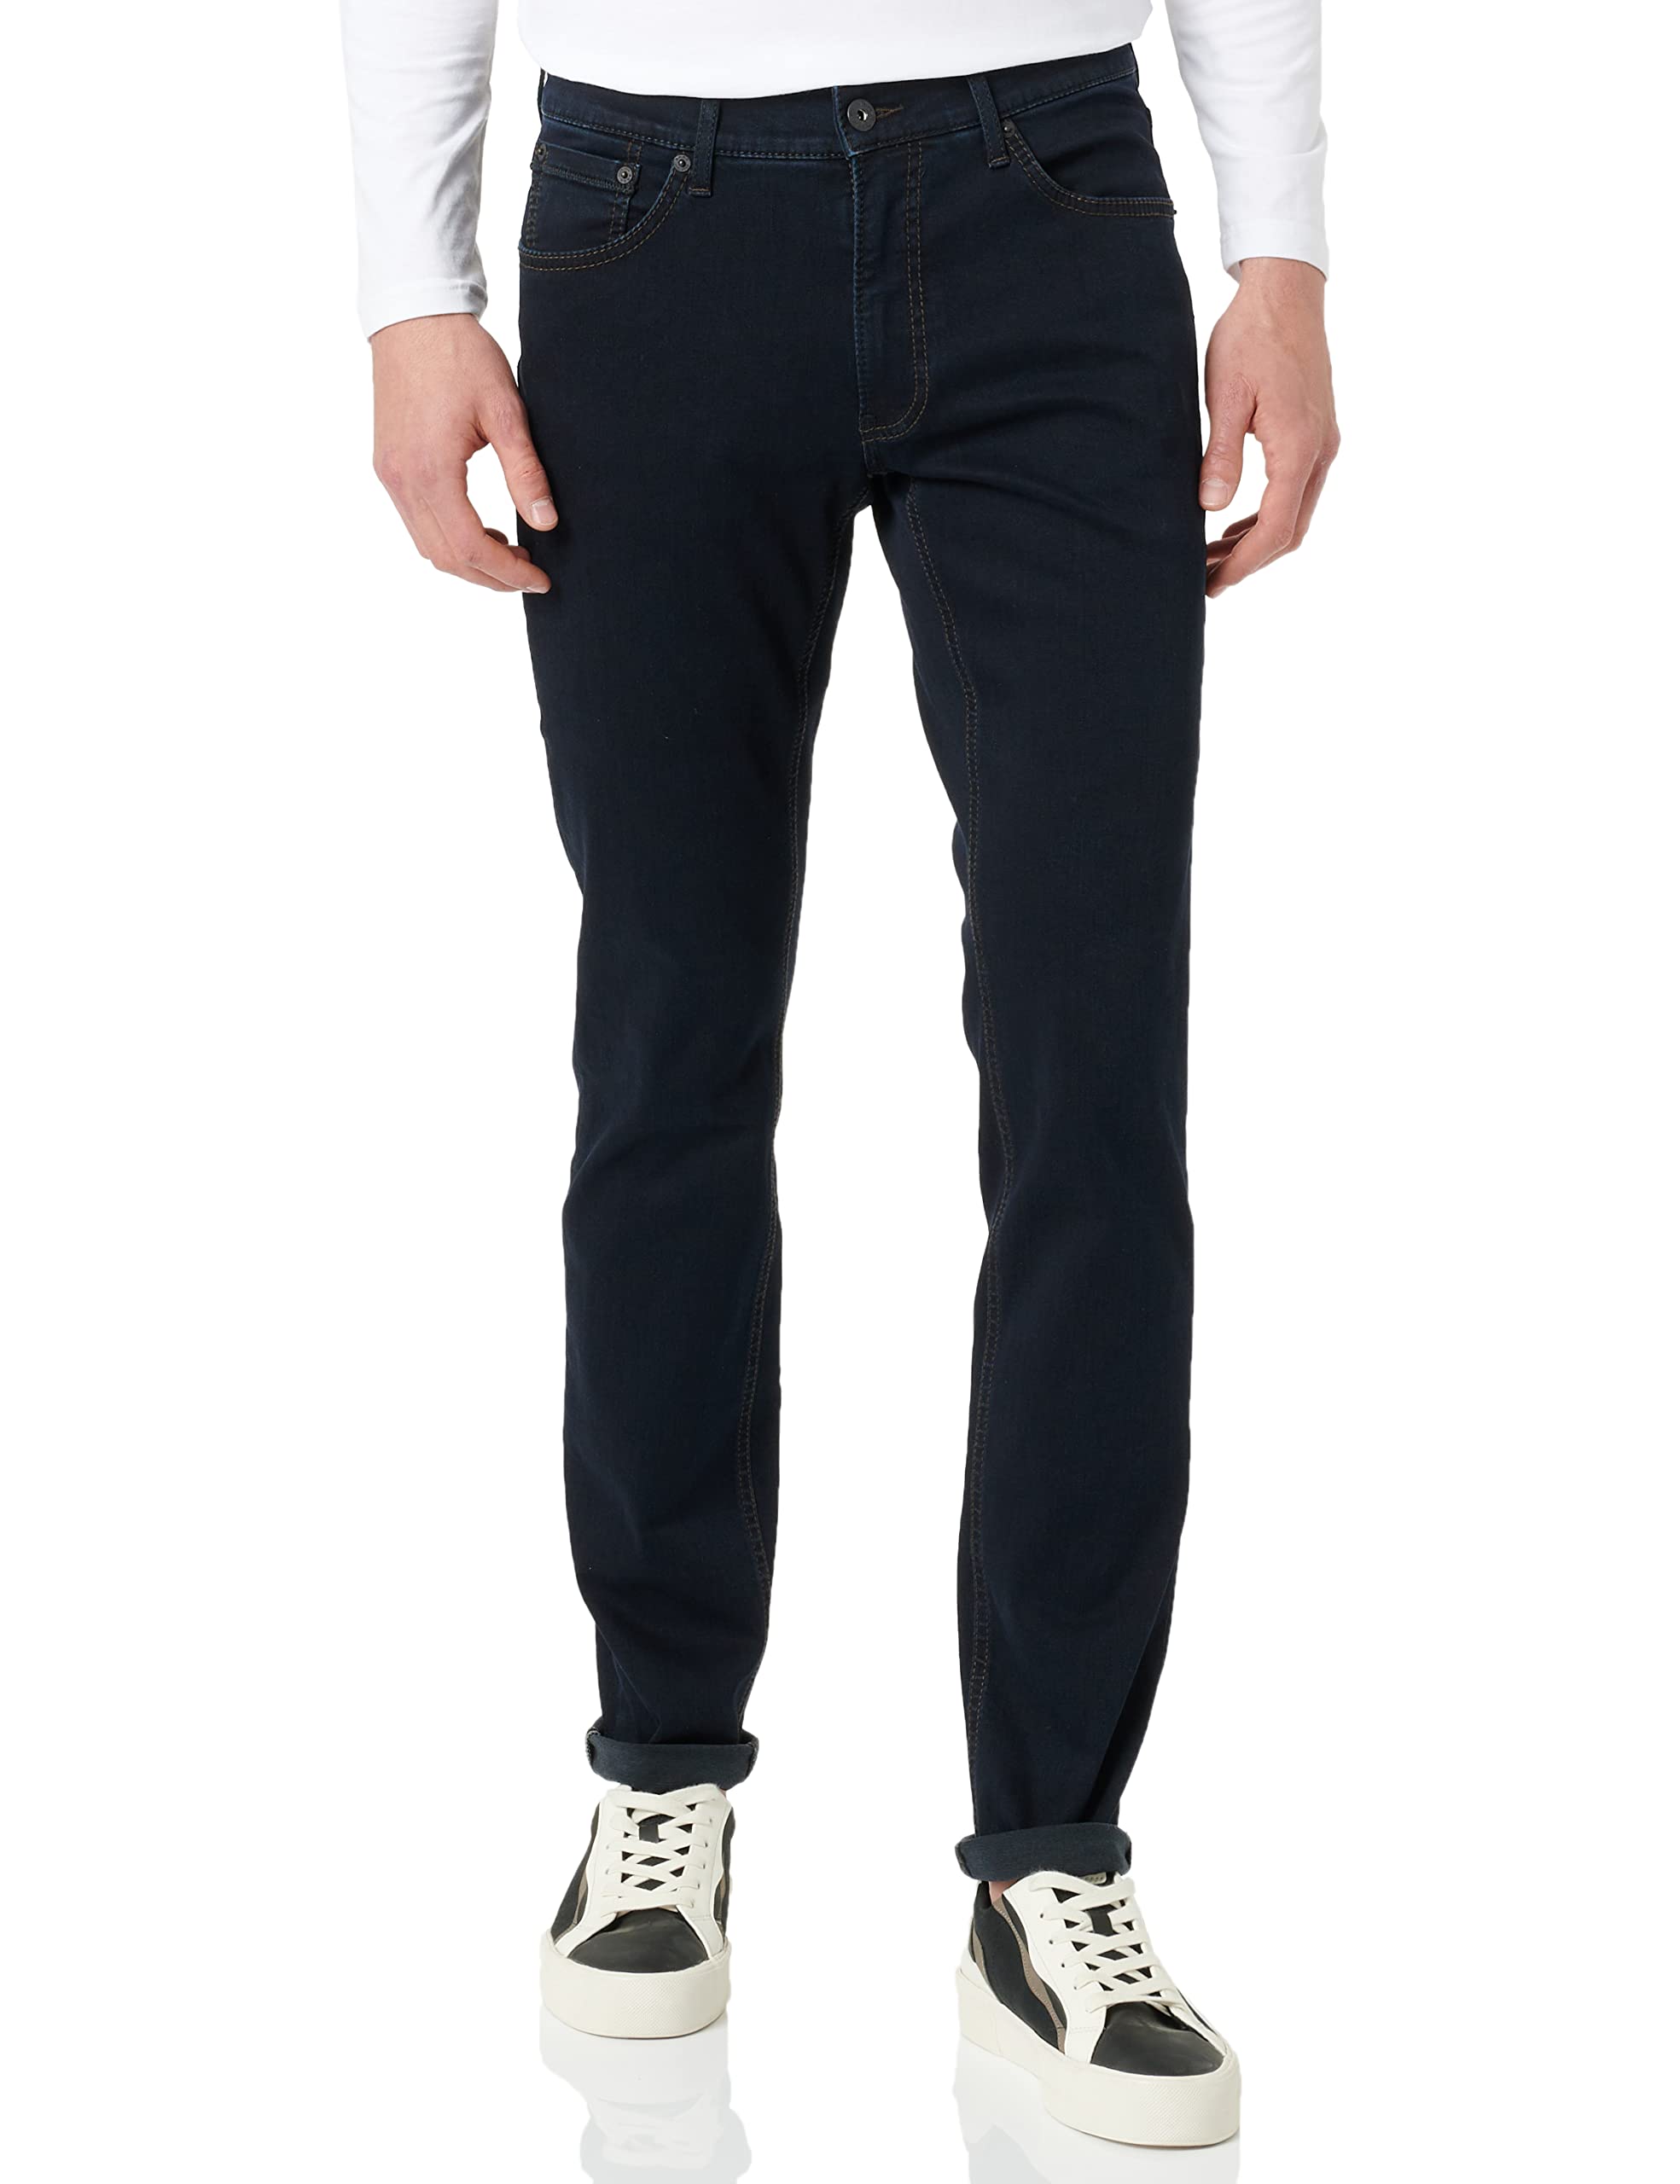 BRAX Herren Style Chuck Hi-flex: Five-pocket Jeans, Raw Blue, 36W / 36L EU